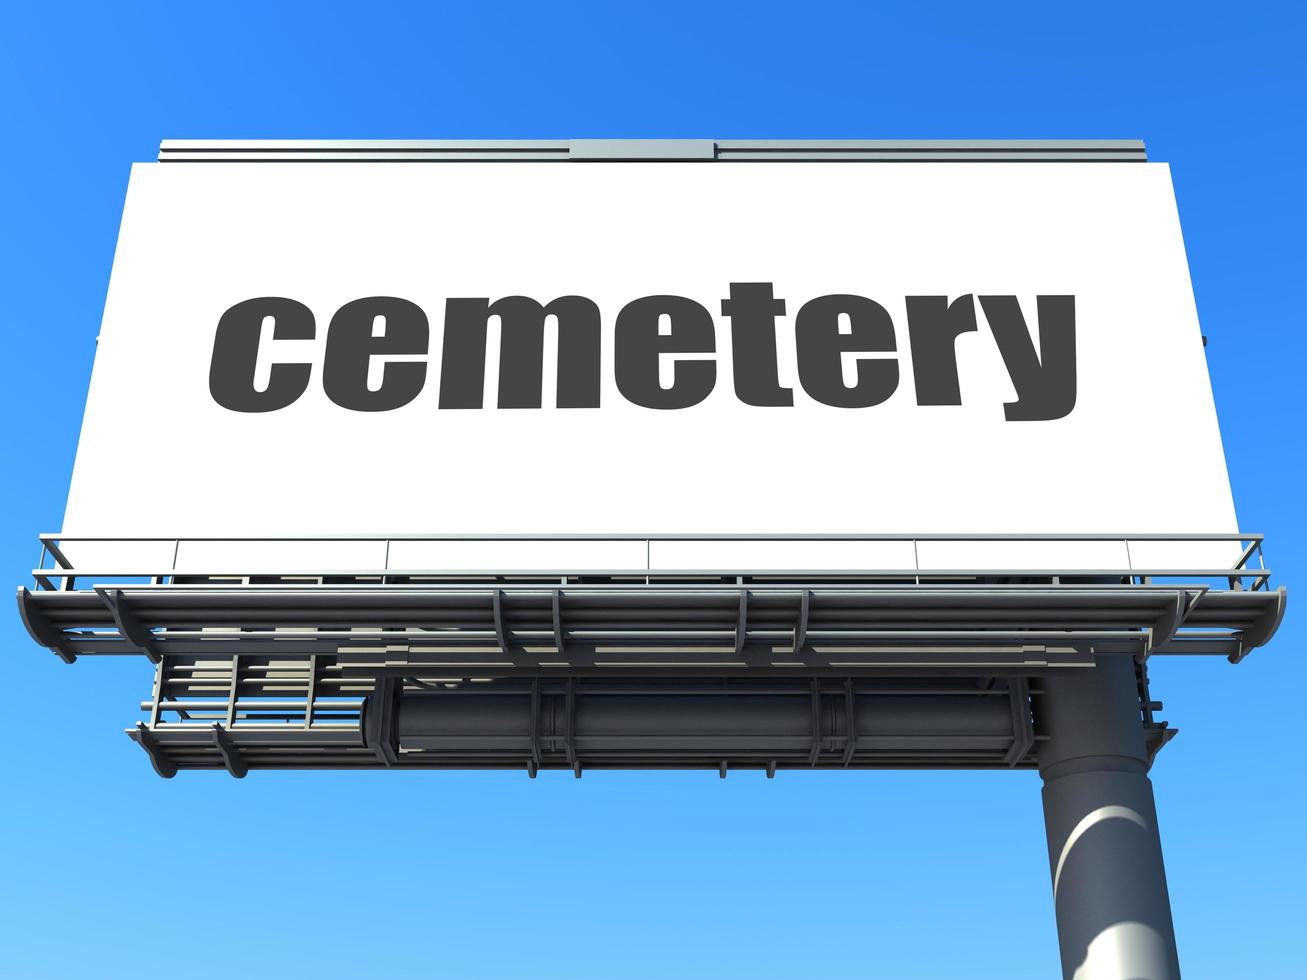 palavra cemitério em outdoor foto